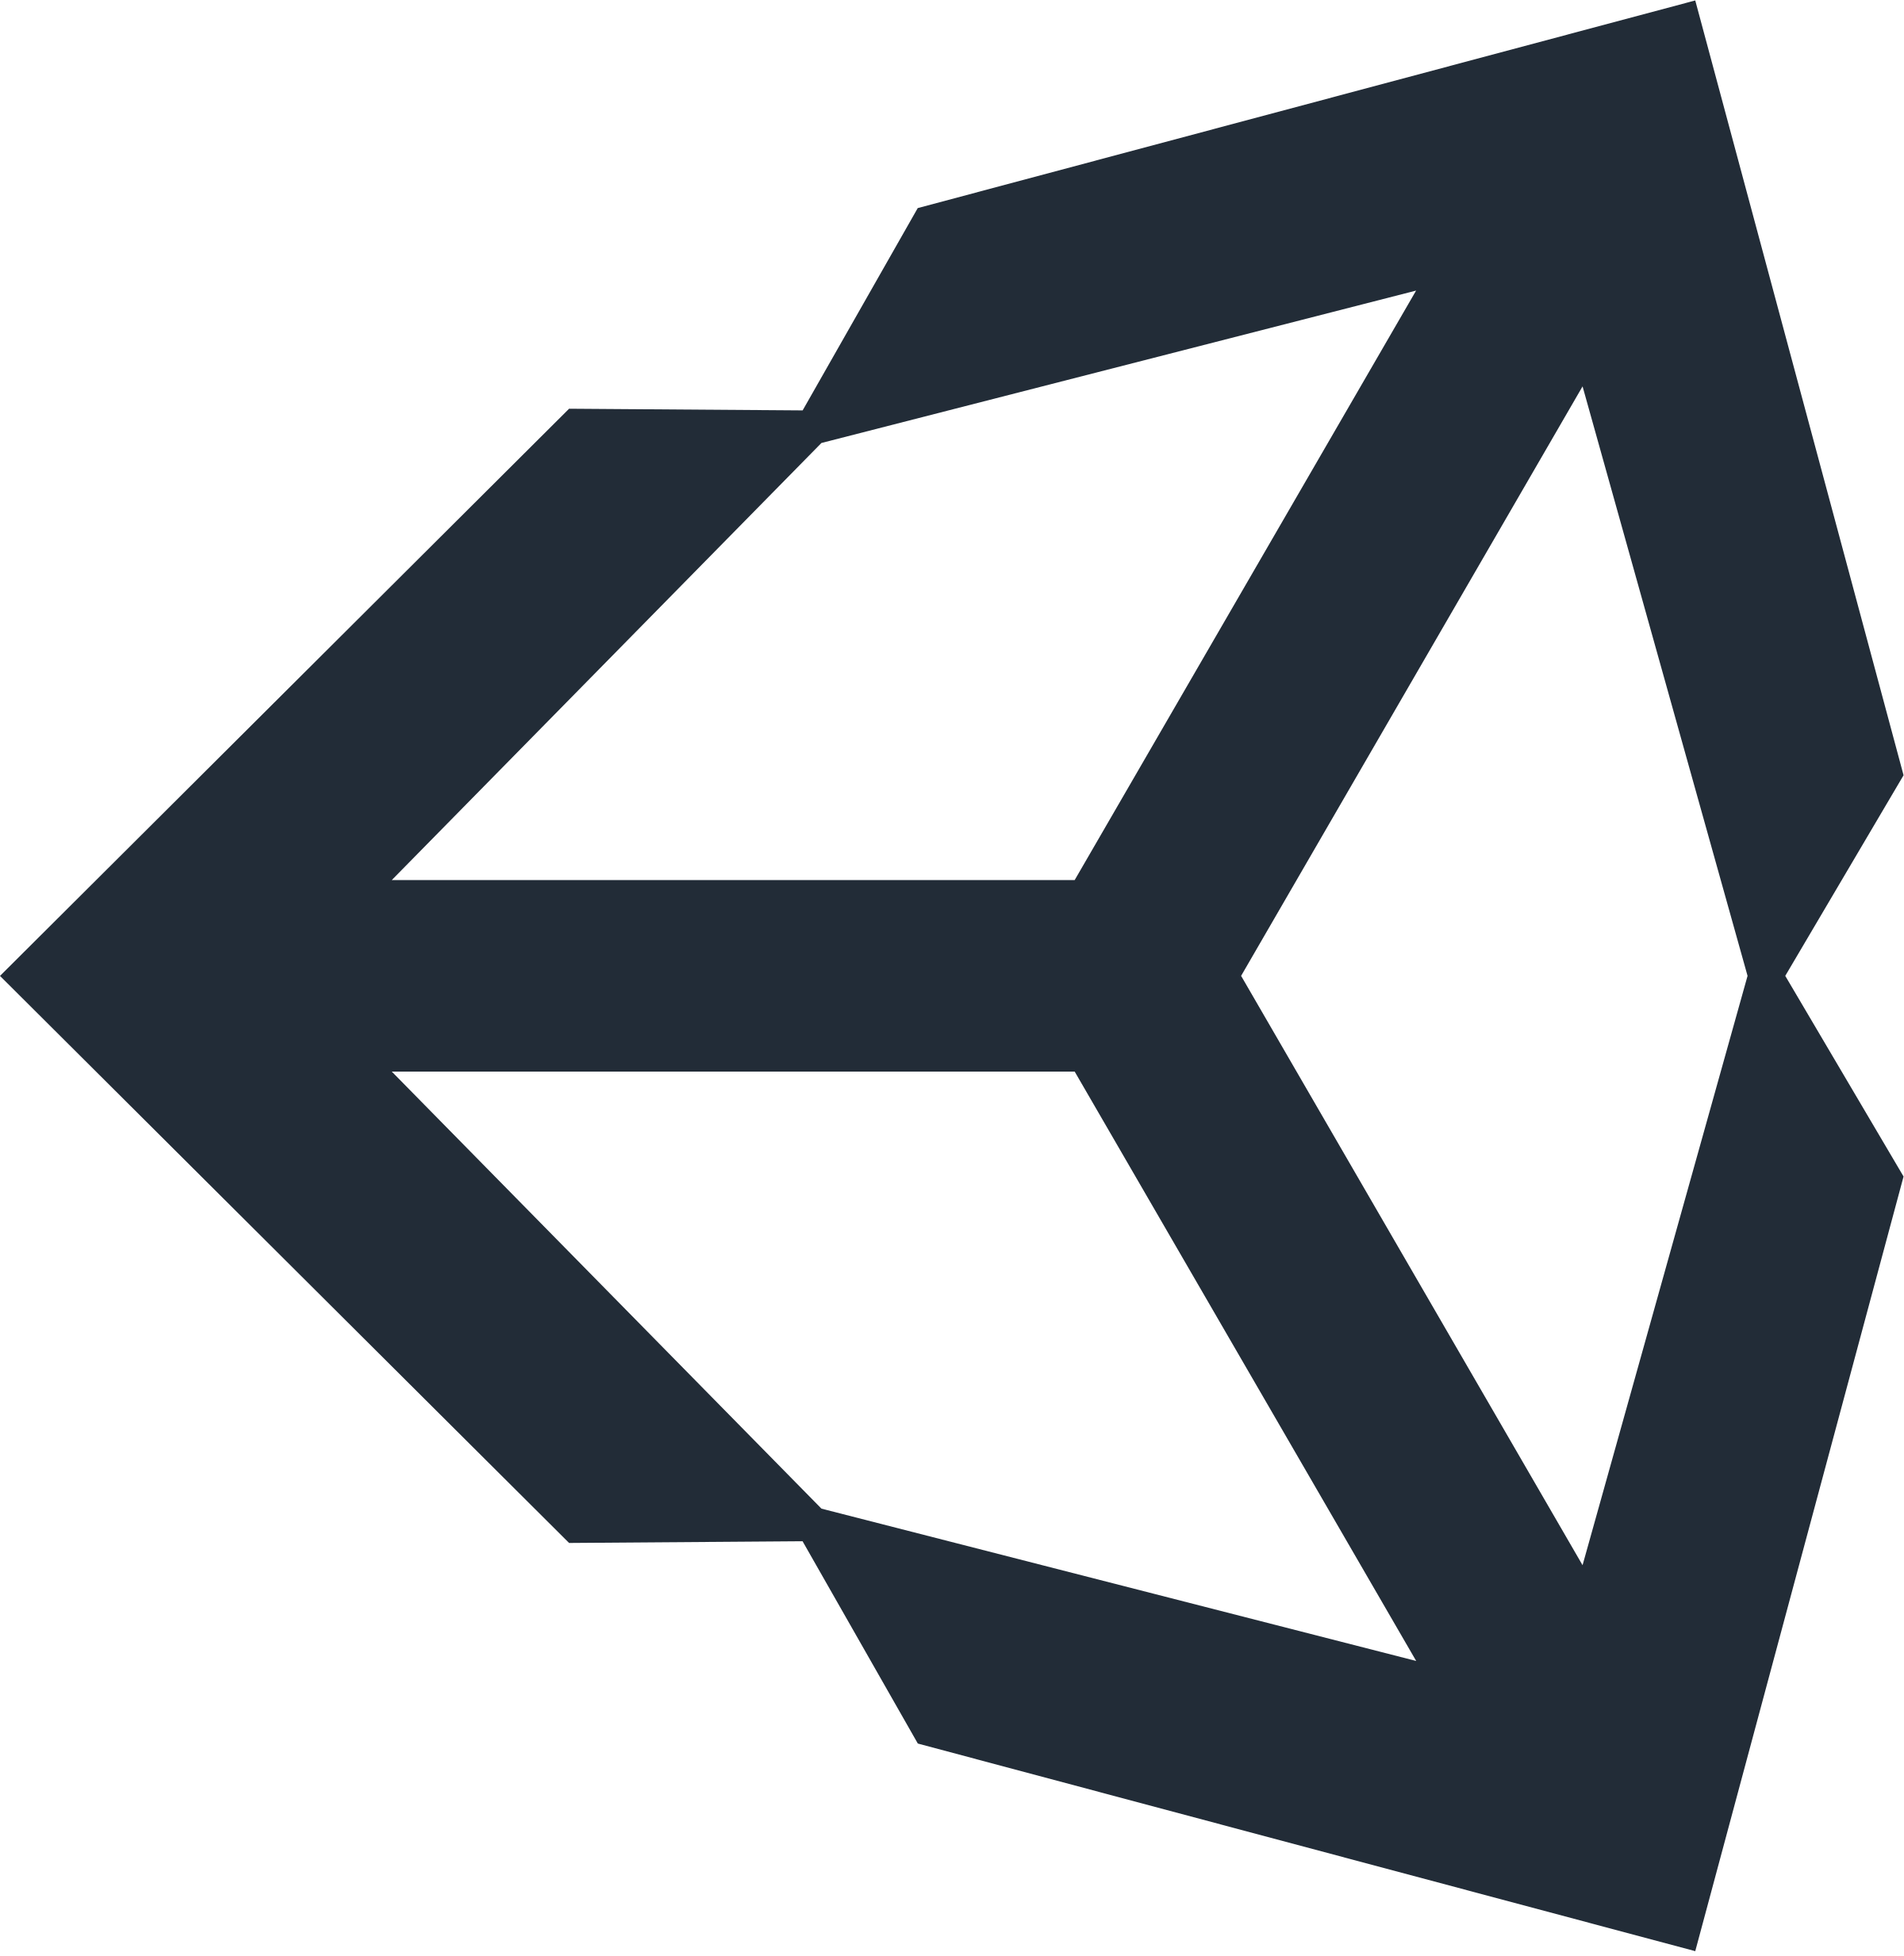 Unity3D Logo